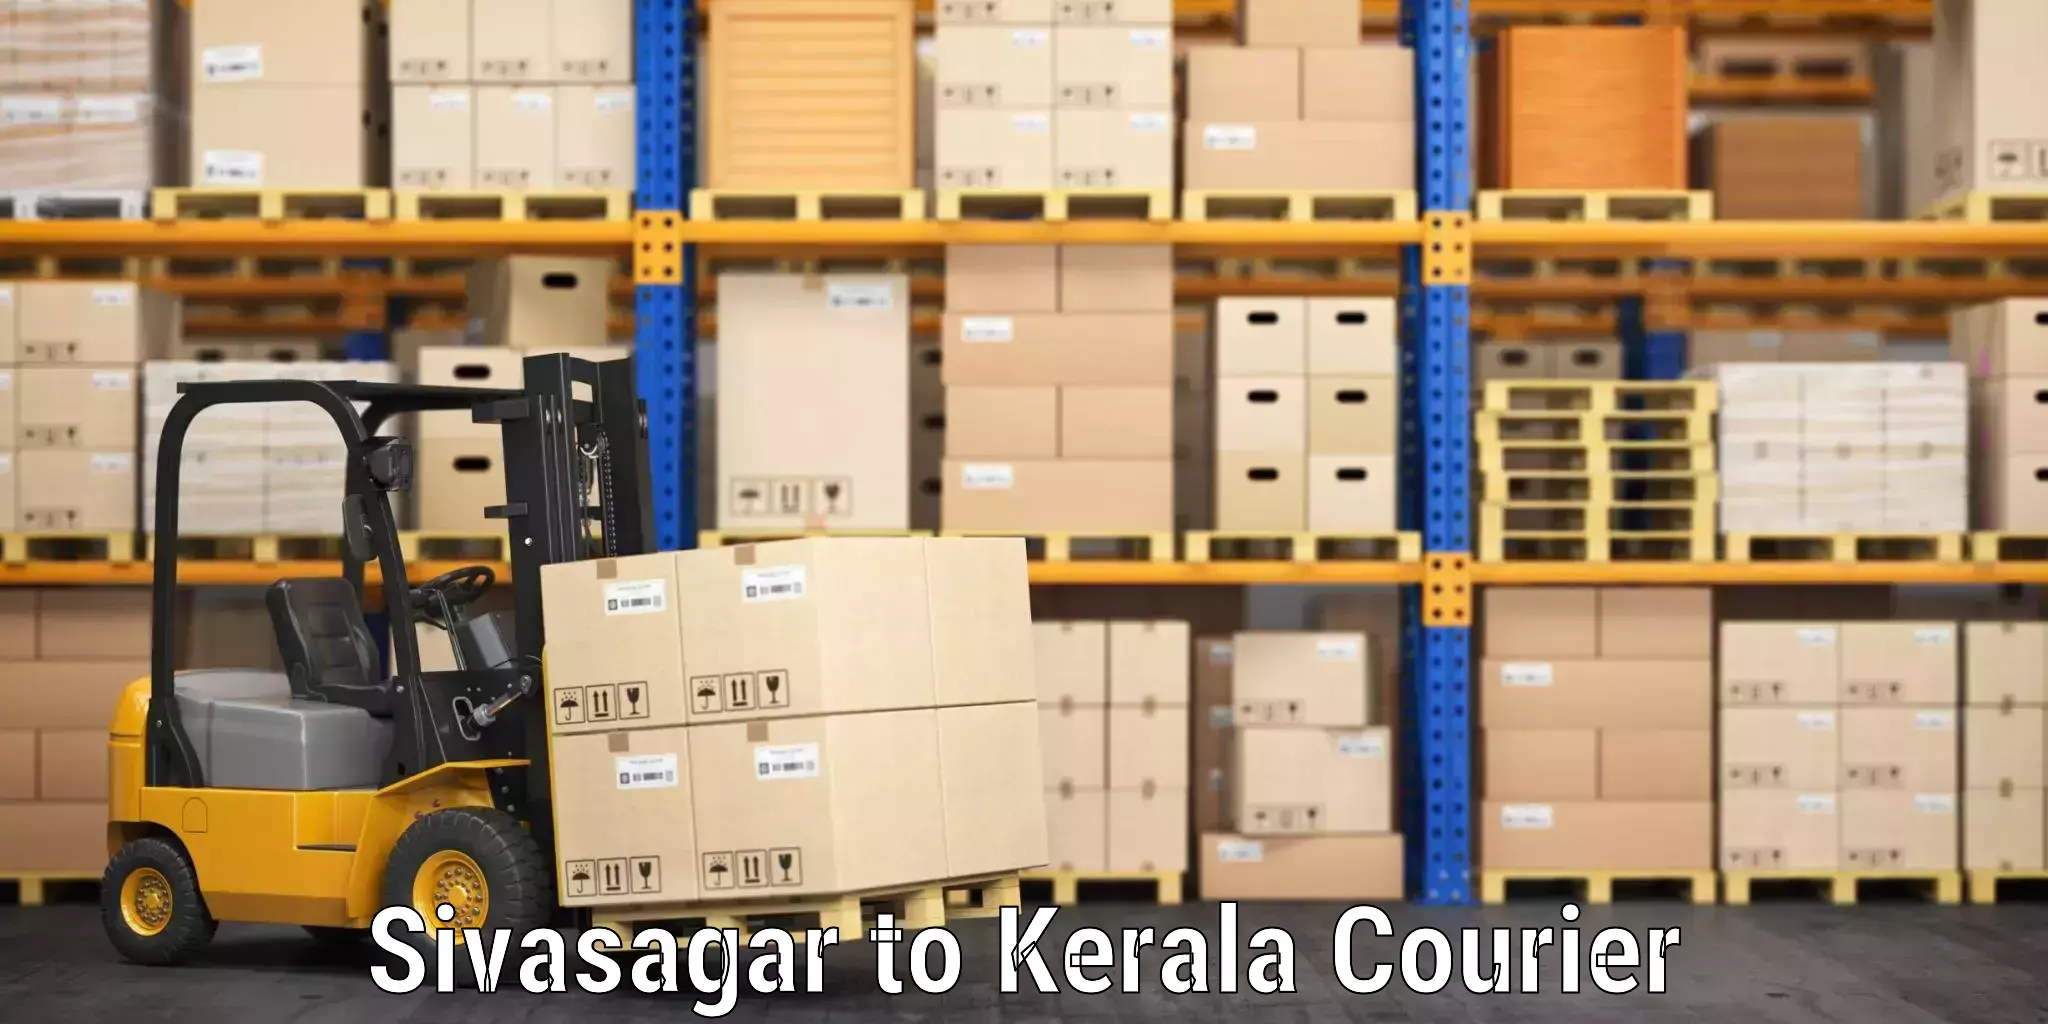 Baggage shipping calculator Sivasagar to Tirur